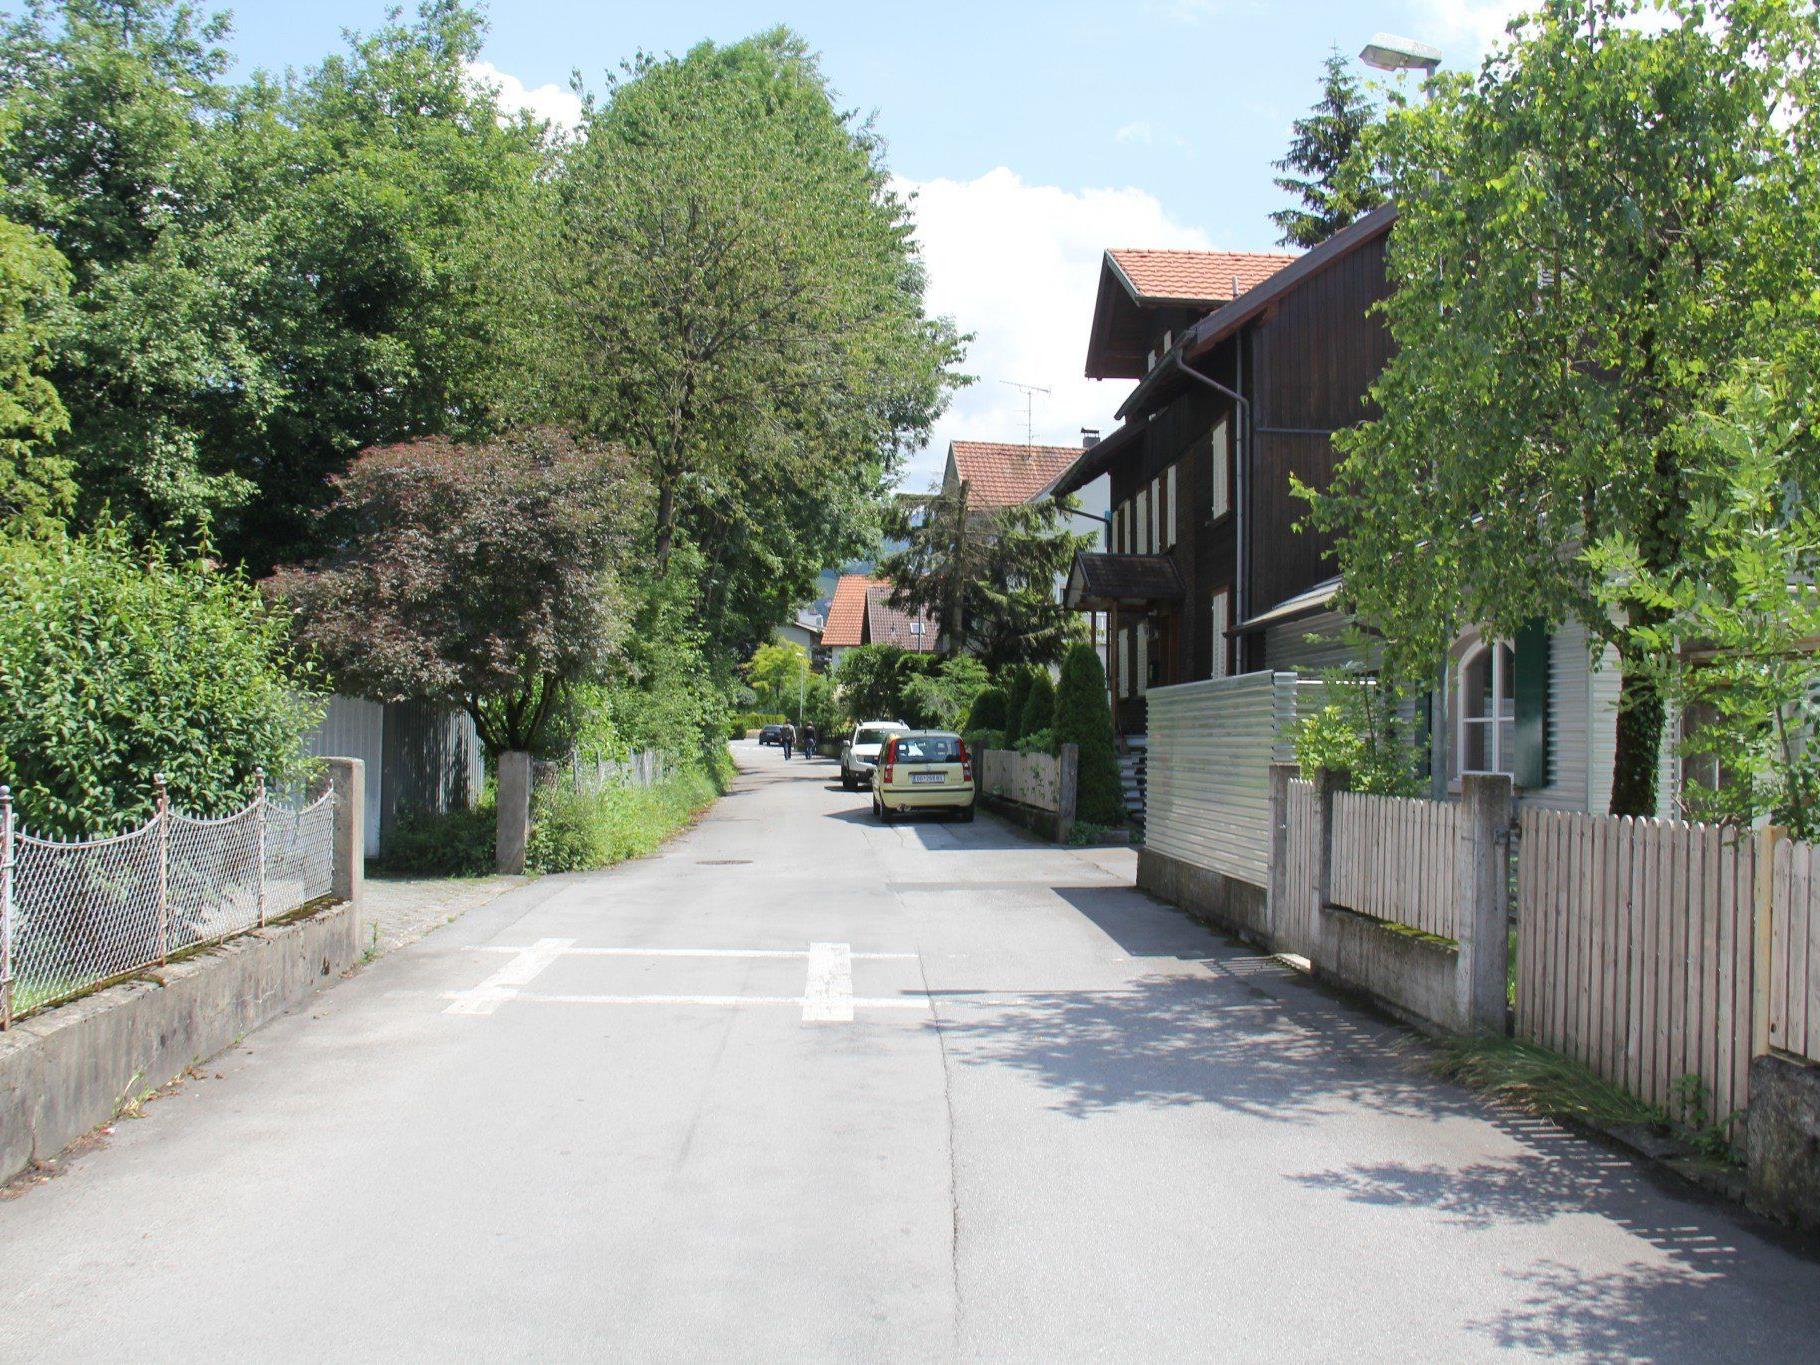 VOL.AT stellt die Straßen von Vorarlberg in einer großen Serie vor.